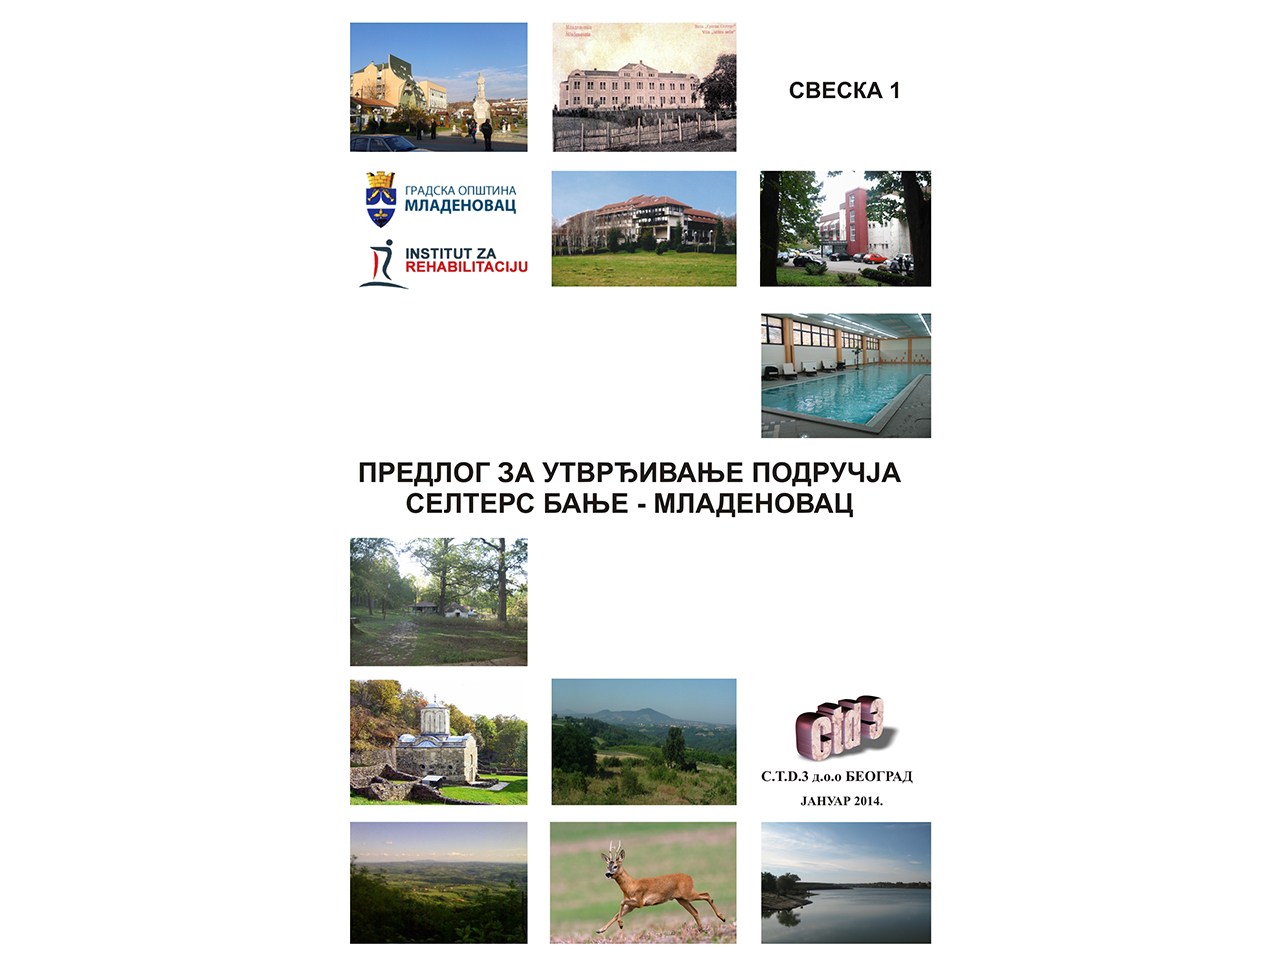 Photo 2 - CONSULTING TOURISM DEVELOPMENT -C.T.D. 3 LTD Consulting, auditing Belgrade